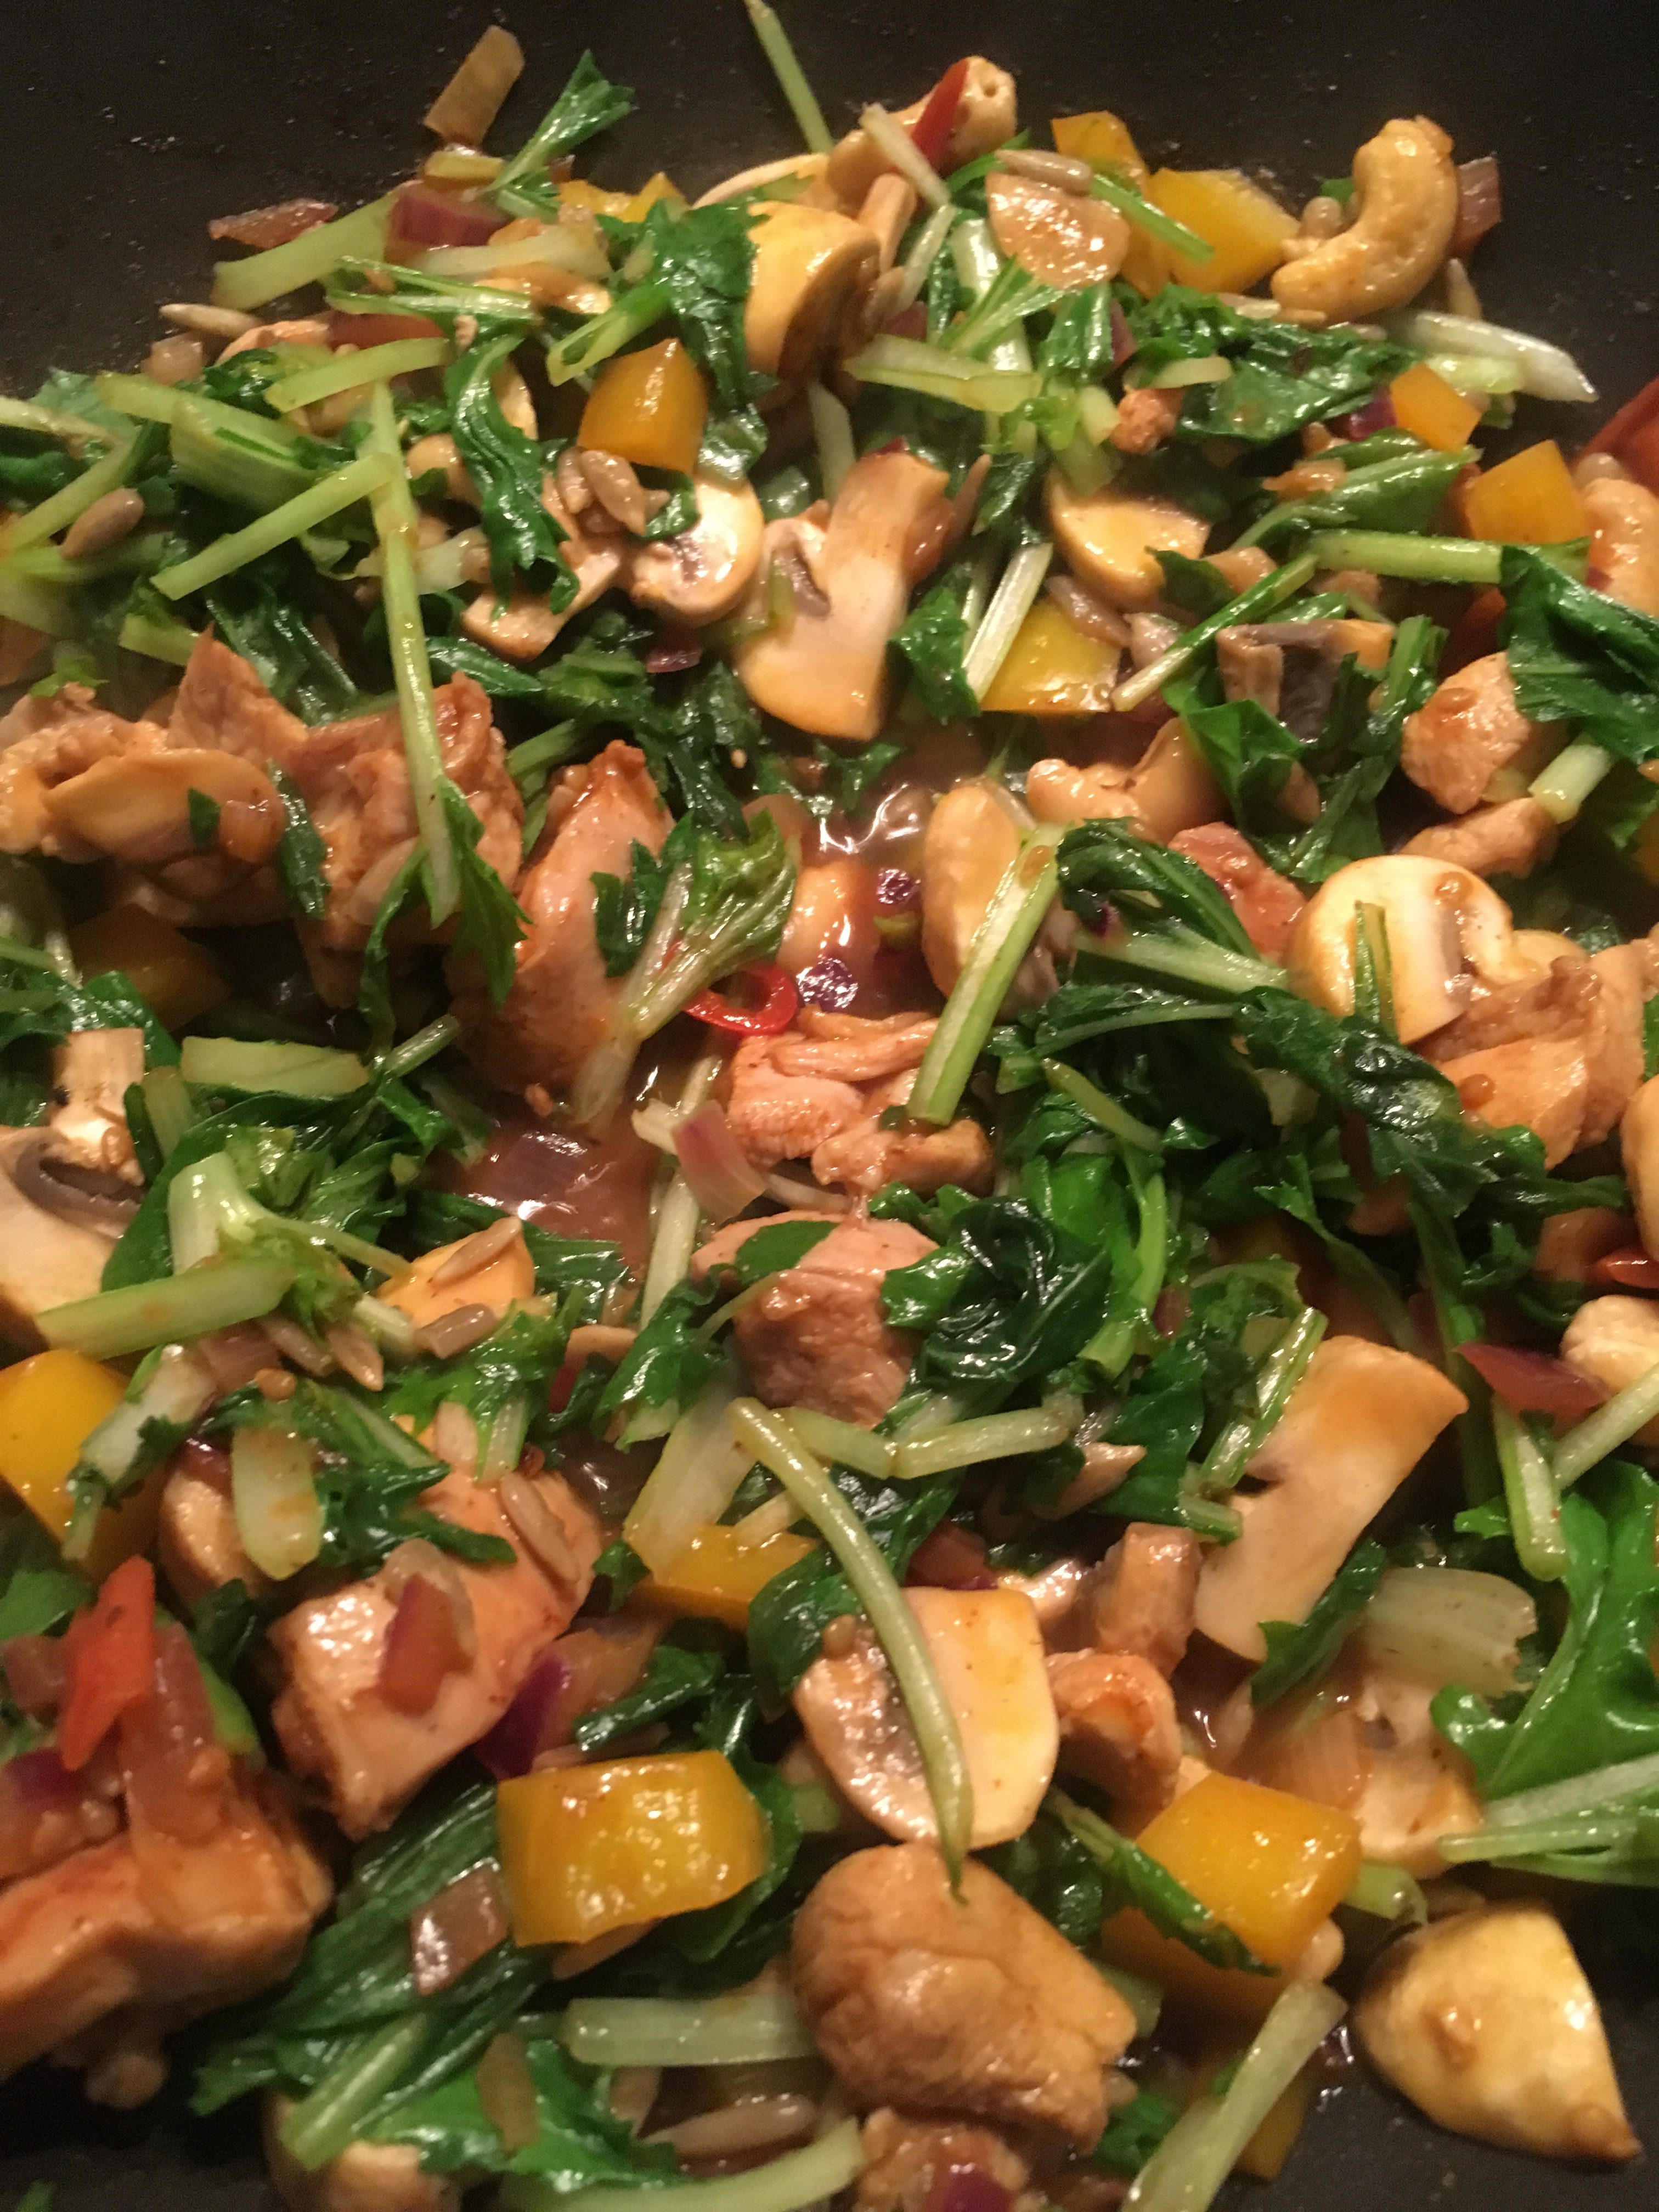 Raapstelen met champignons uit de wok - Dagelijkse Voeding